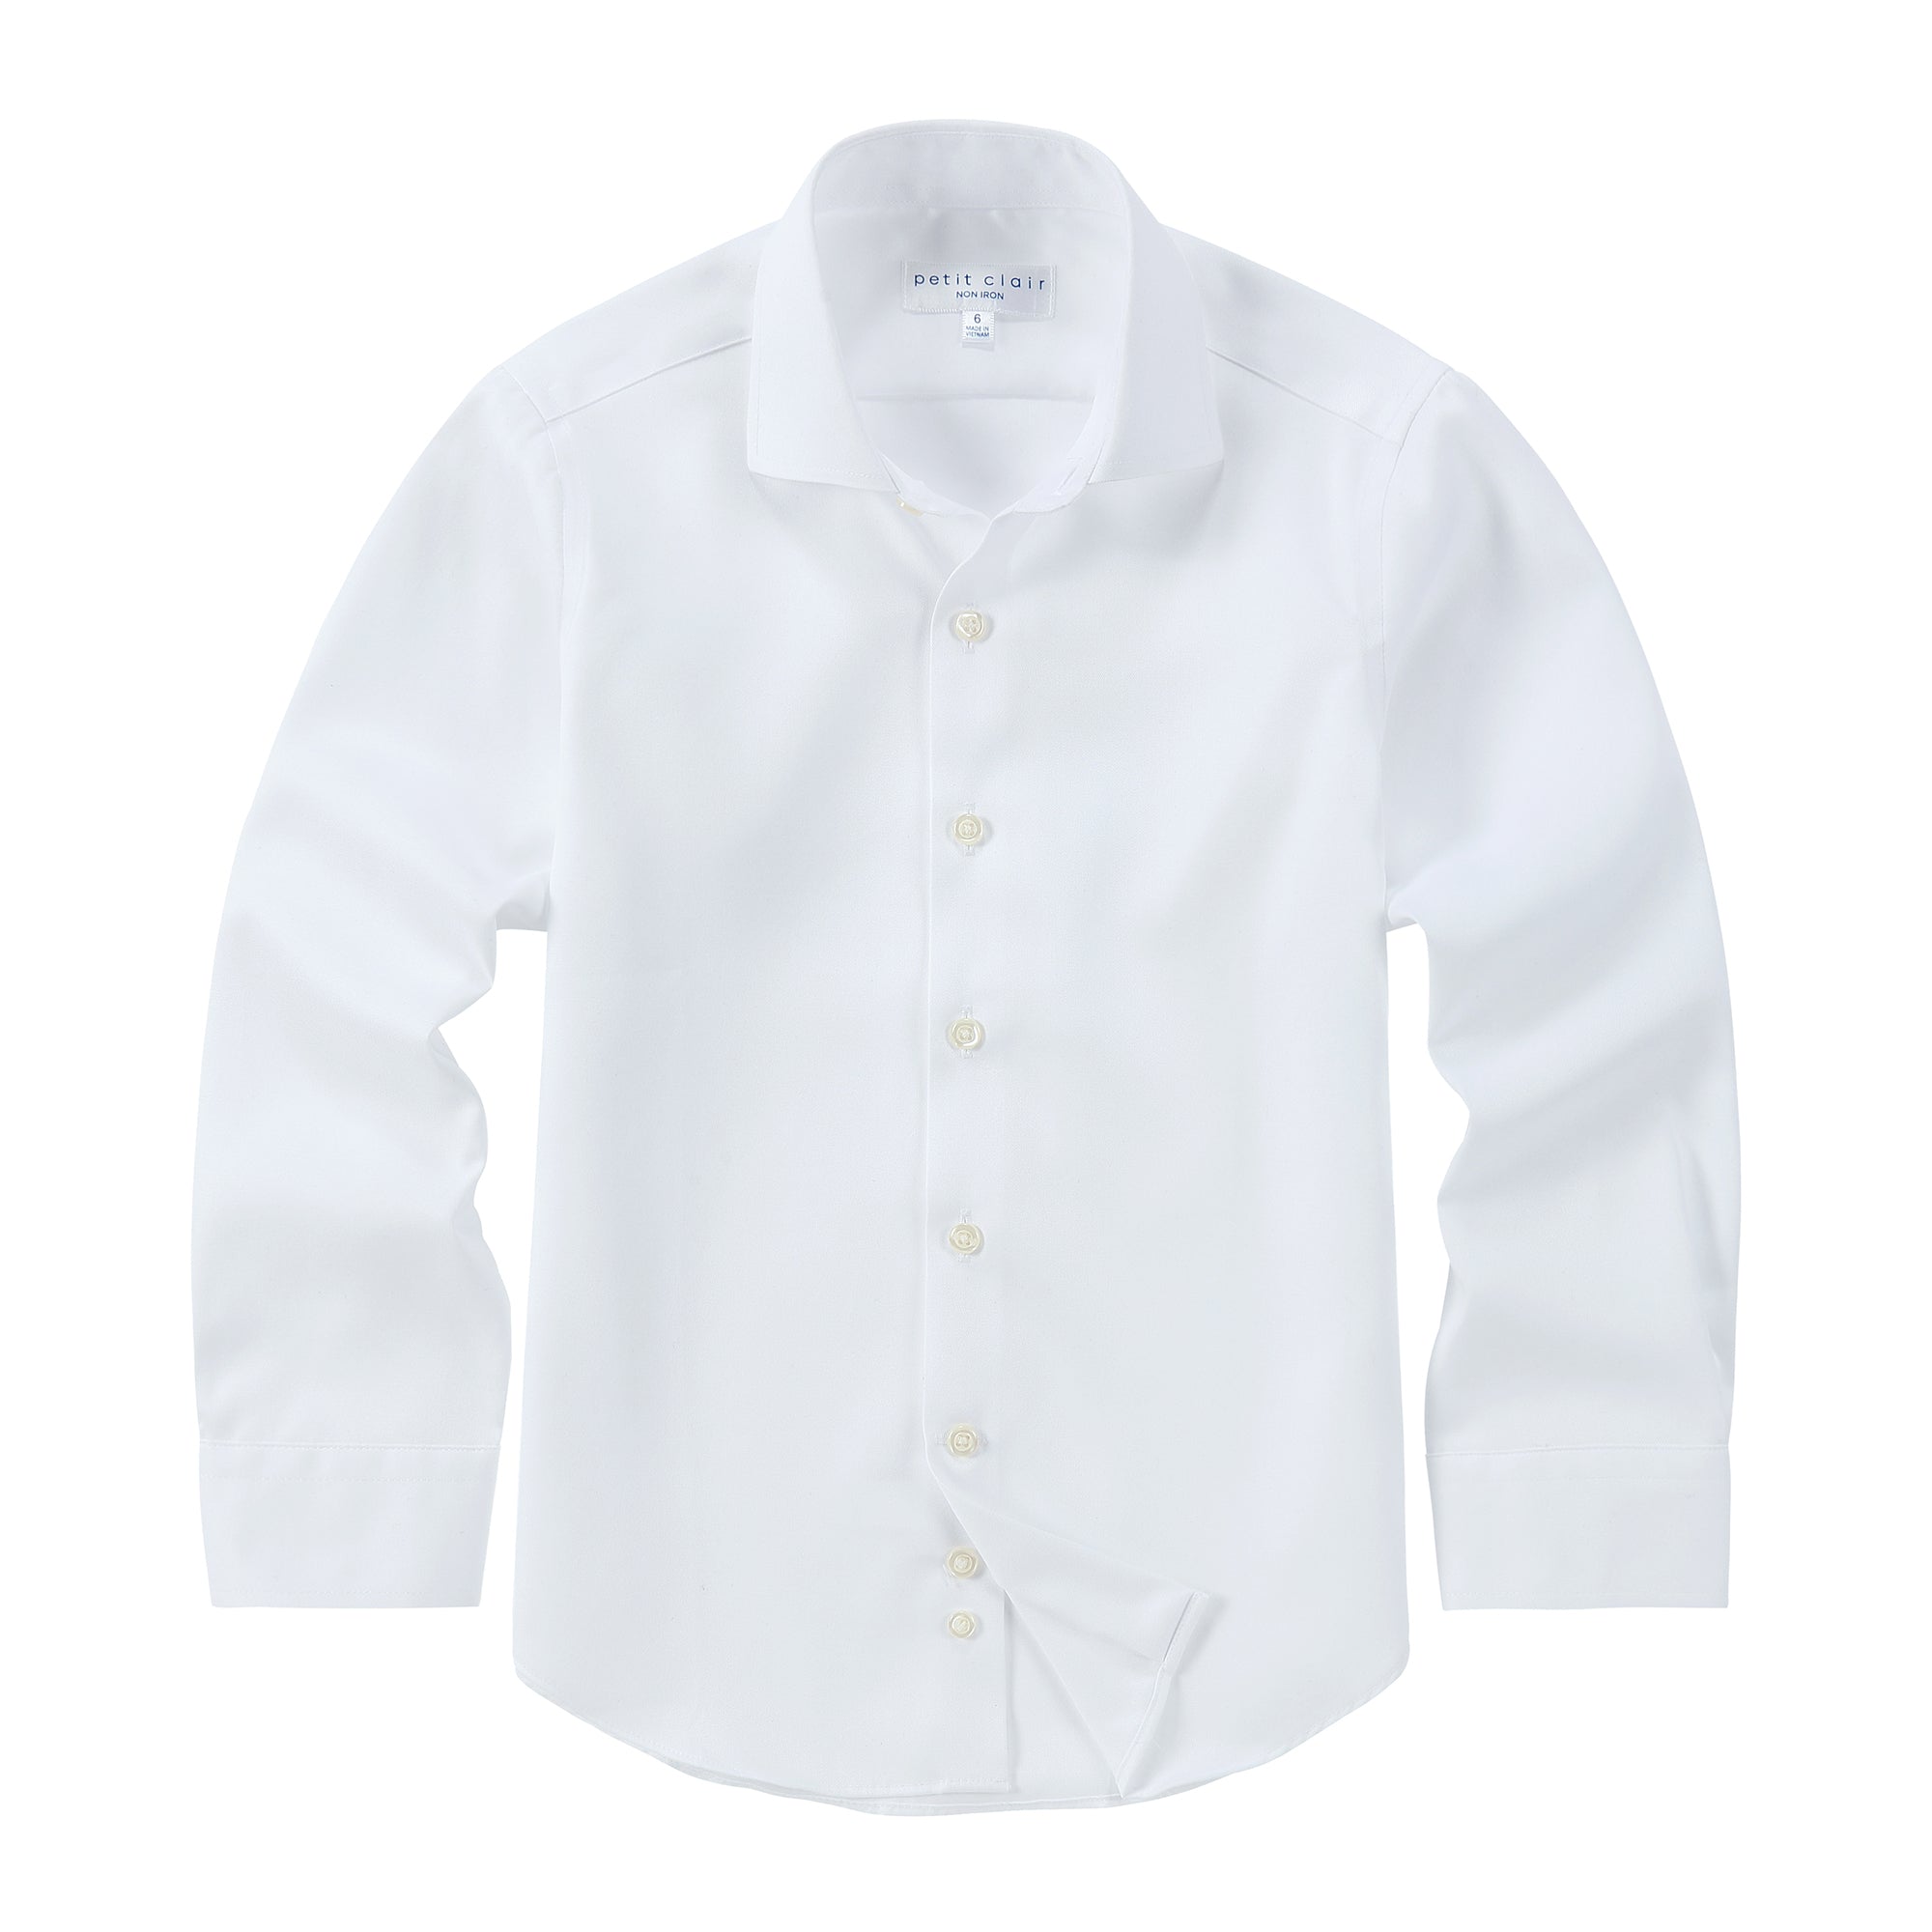 Non-Iron Spread Collar White Shirt- Long Sleeve